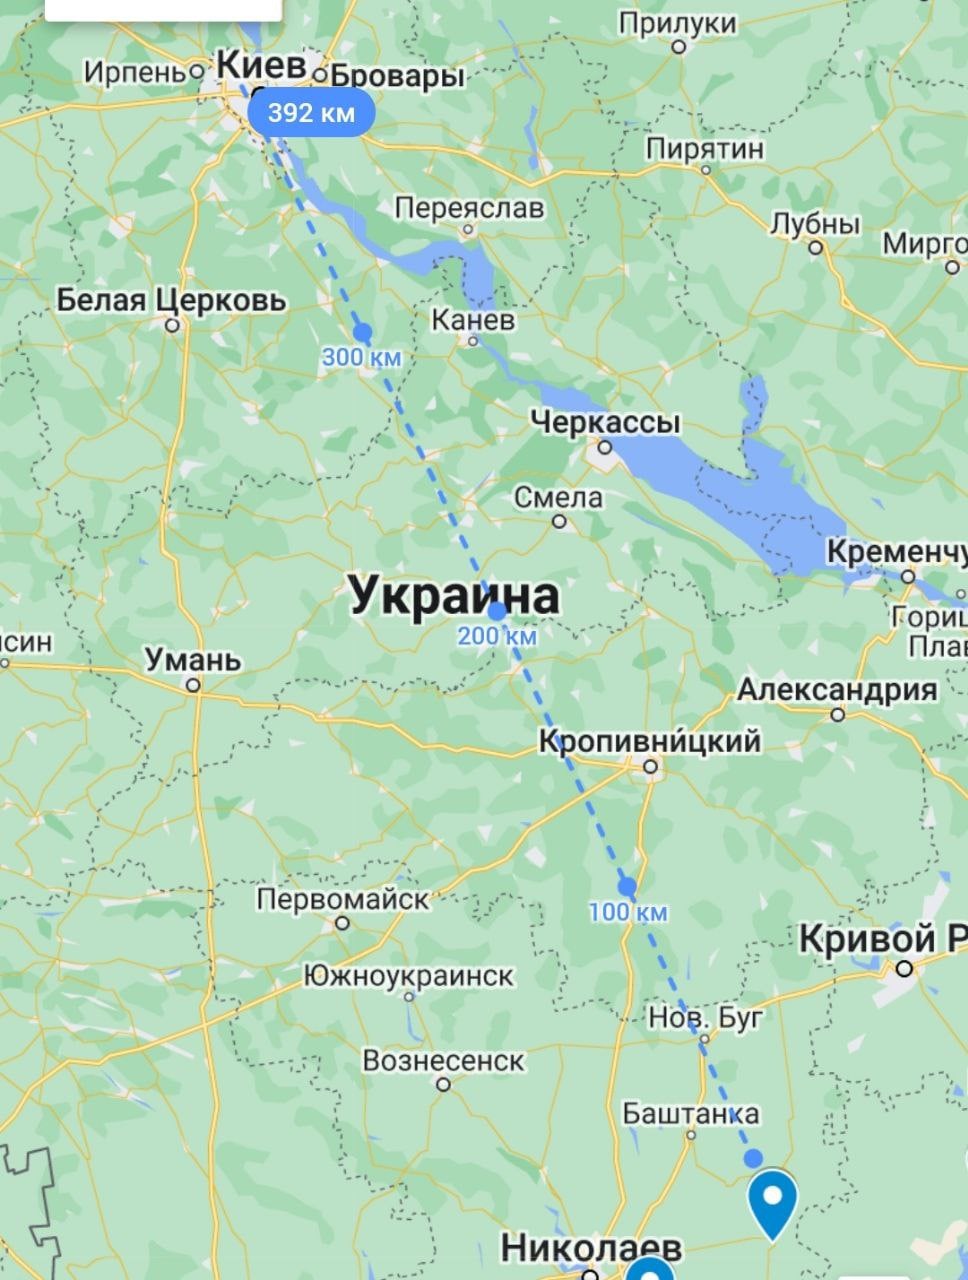 Расстояние от линии фронта на юге до Киева - около 400 км